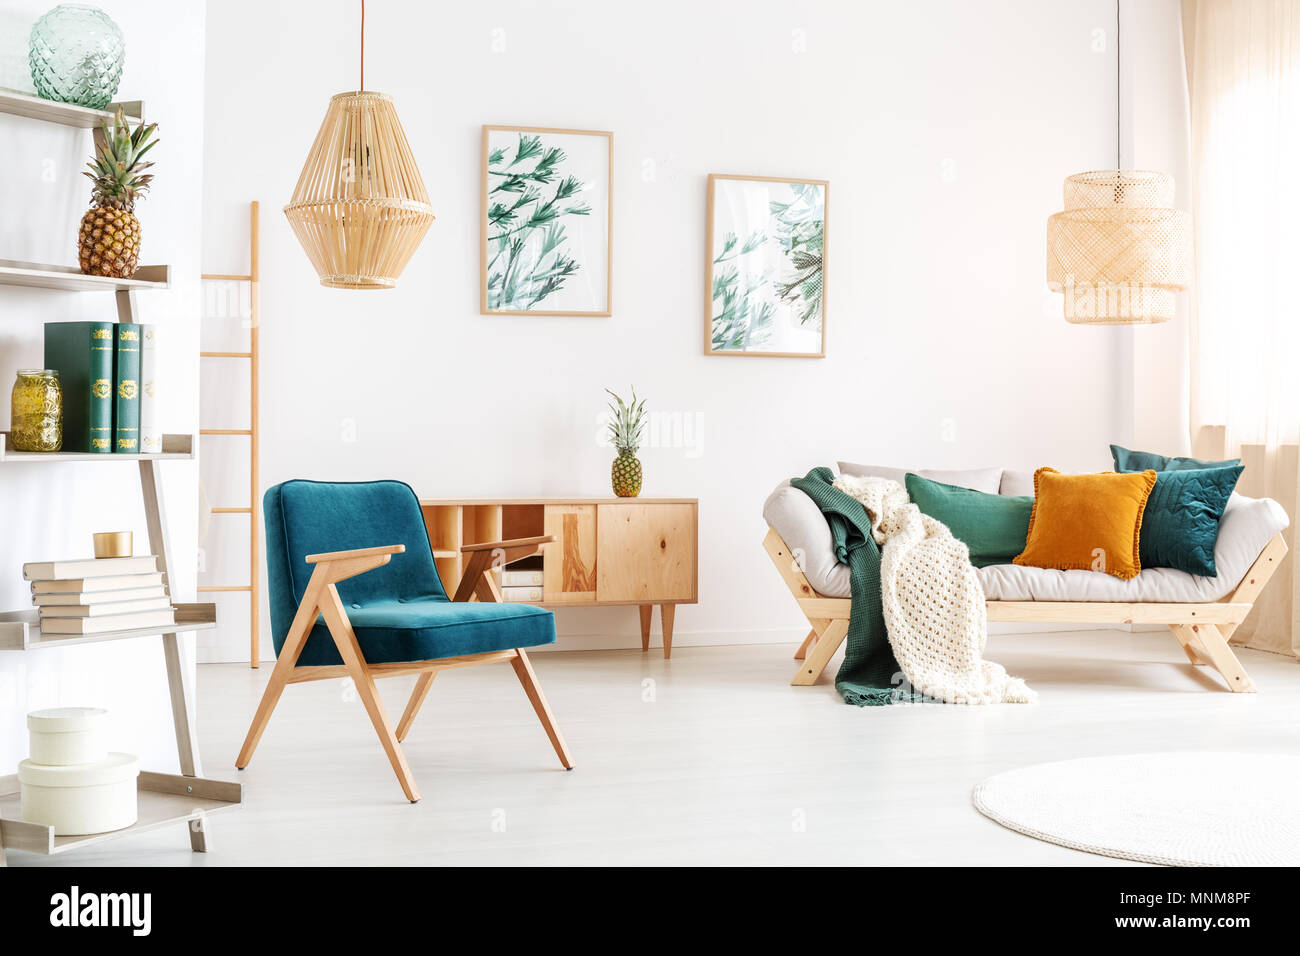 Handgefertigte Lampe über Blue vintage Stuhl im Zimmer mit grün und orange Kissen auf dem Sofa entspannen Stockfoto